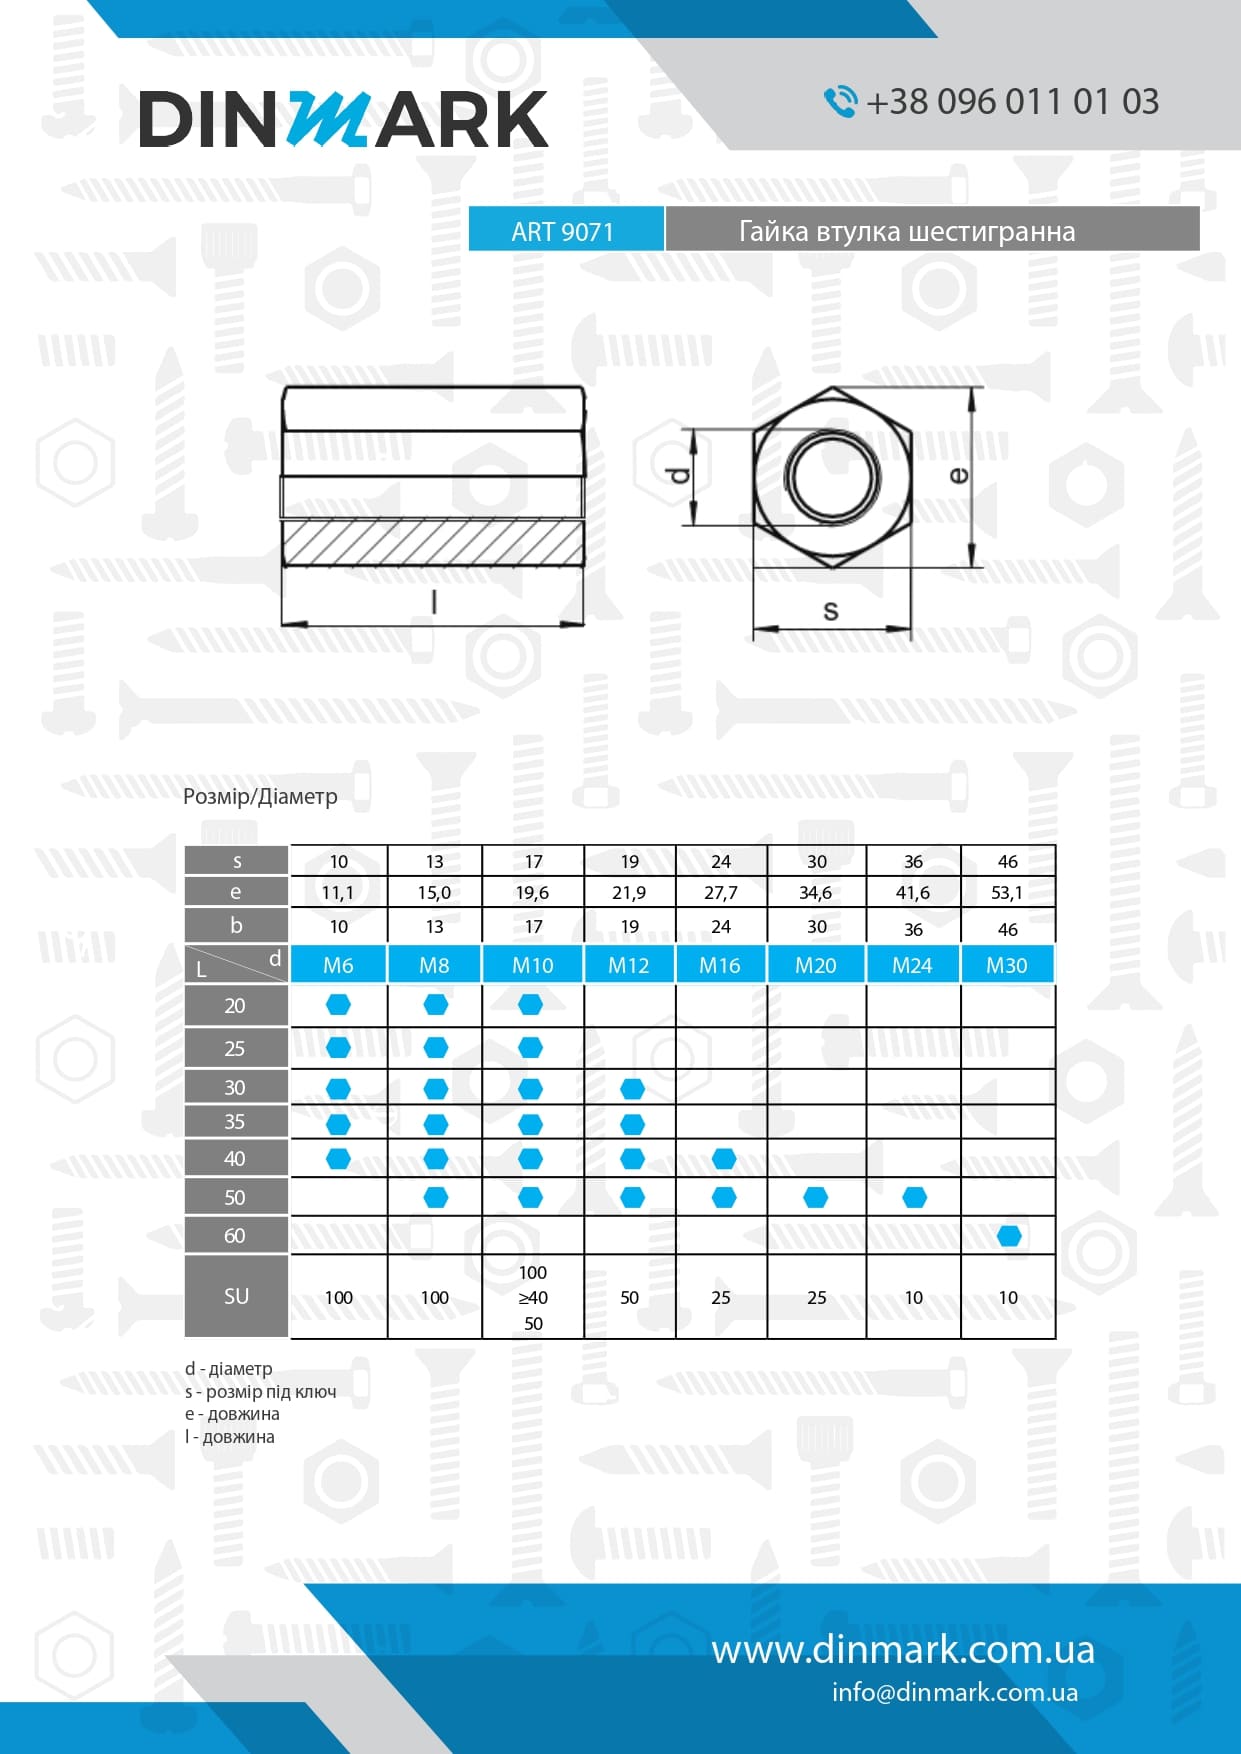 ART 9071 zinc Hexagon socket nut pdf